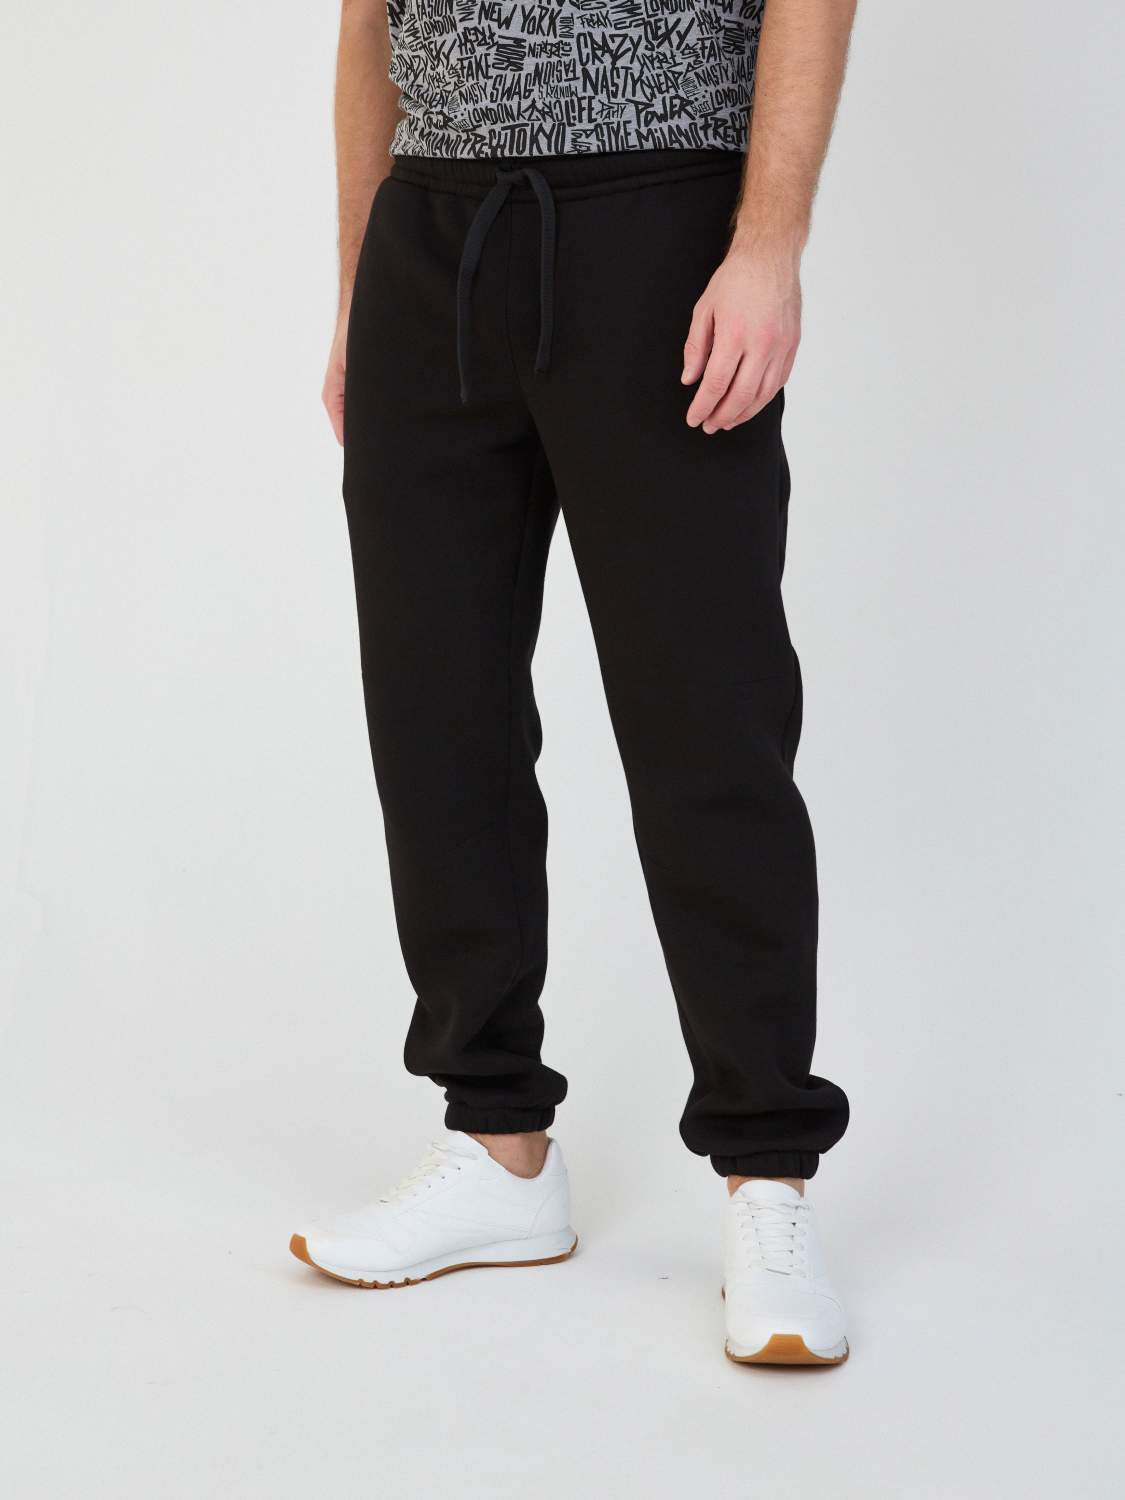 Спортивные брюки мужские Jonquil 104Б06 черные 3XL - купить в Москве, ценына Мегамаркет